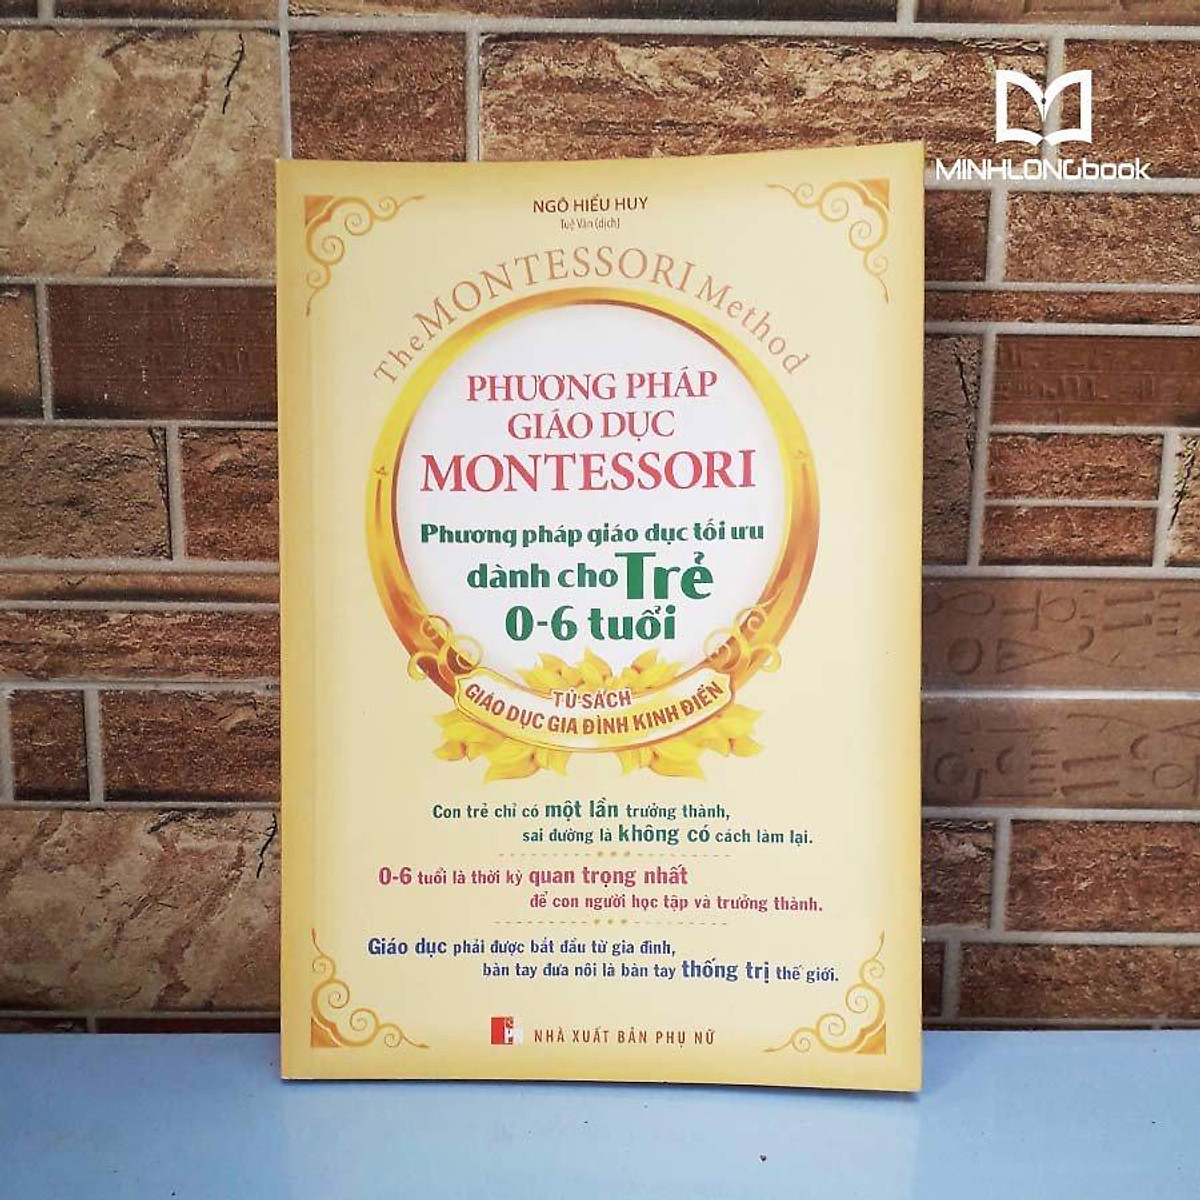 Sách: Phương pháp giáo dục Montessori - Phương pháp giáo dục tối ưu dành cho trẻ 0-6 tuổi - TSTN